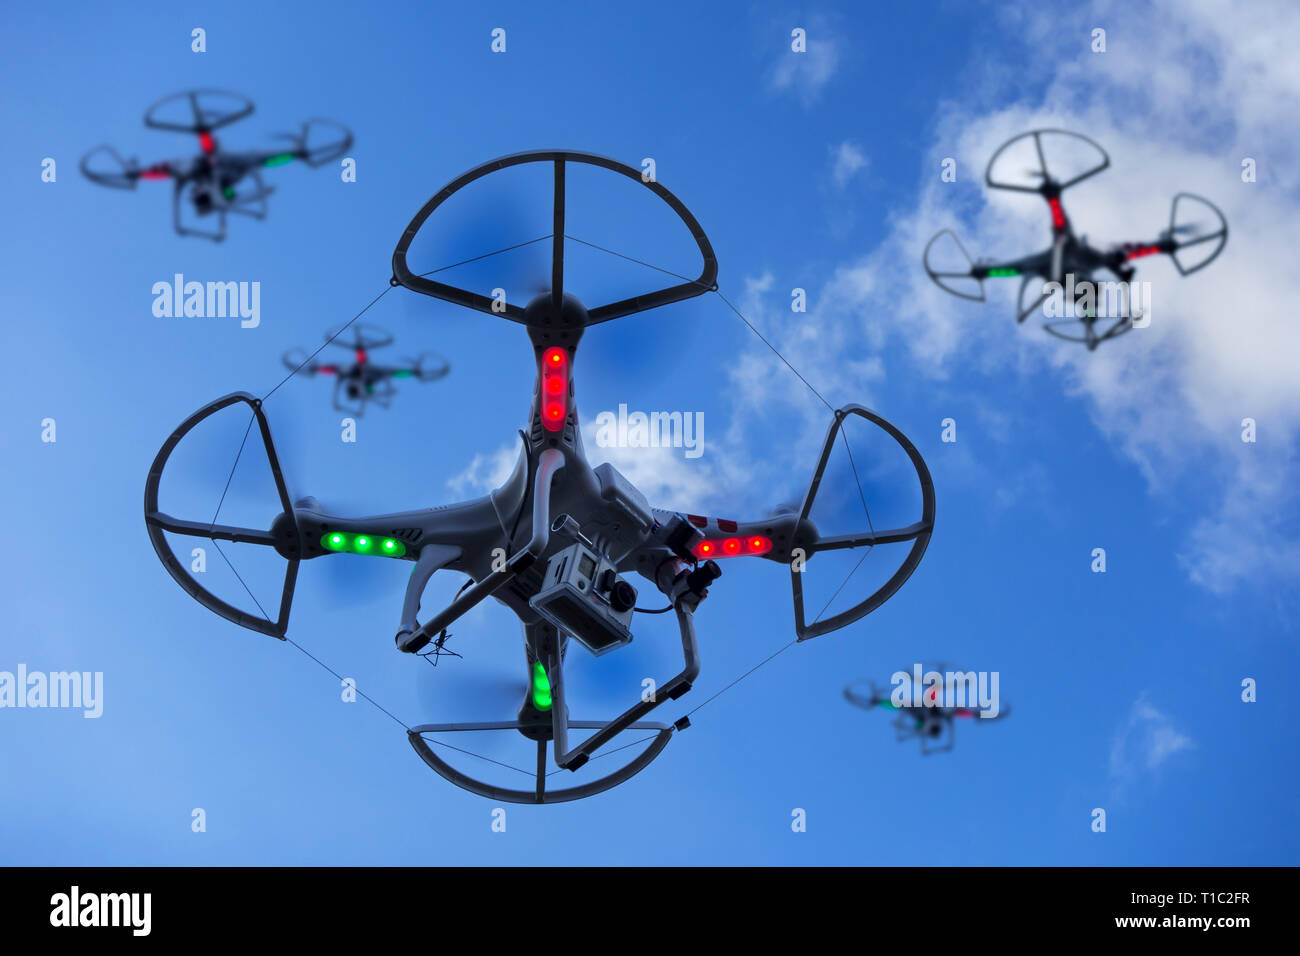 Gruppe von Miniatur Drohnen/unbemannte Fahrzeuge/UAV mit Kamera im Flug gegen den blauen Himmel mit Wolken ausgestattet Stockfoto